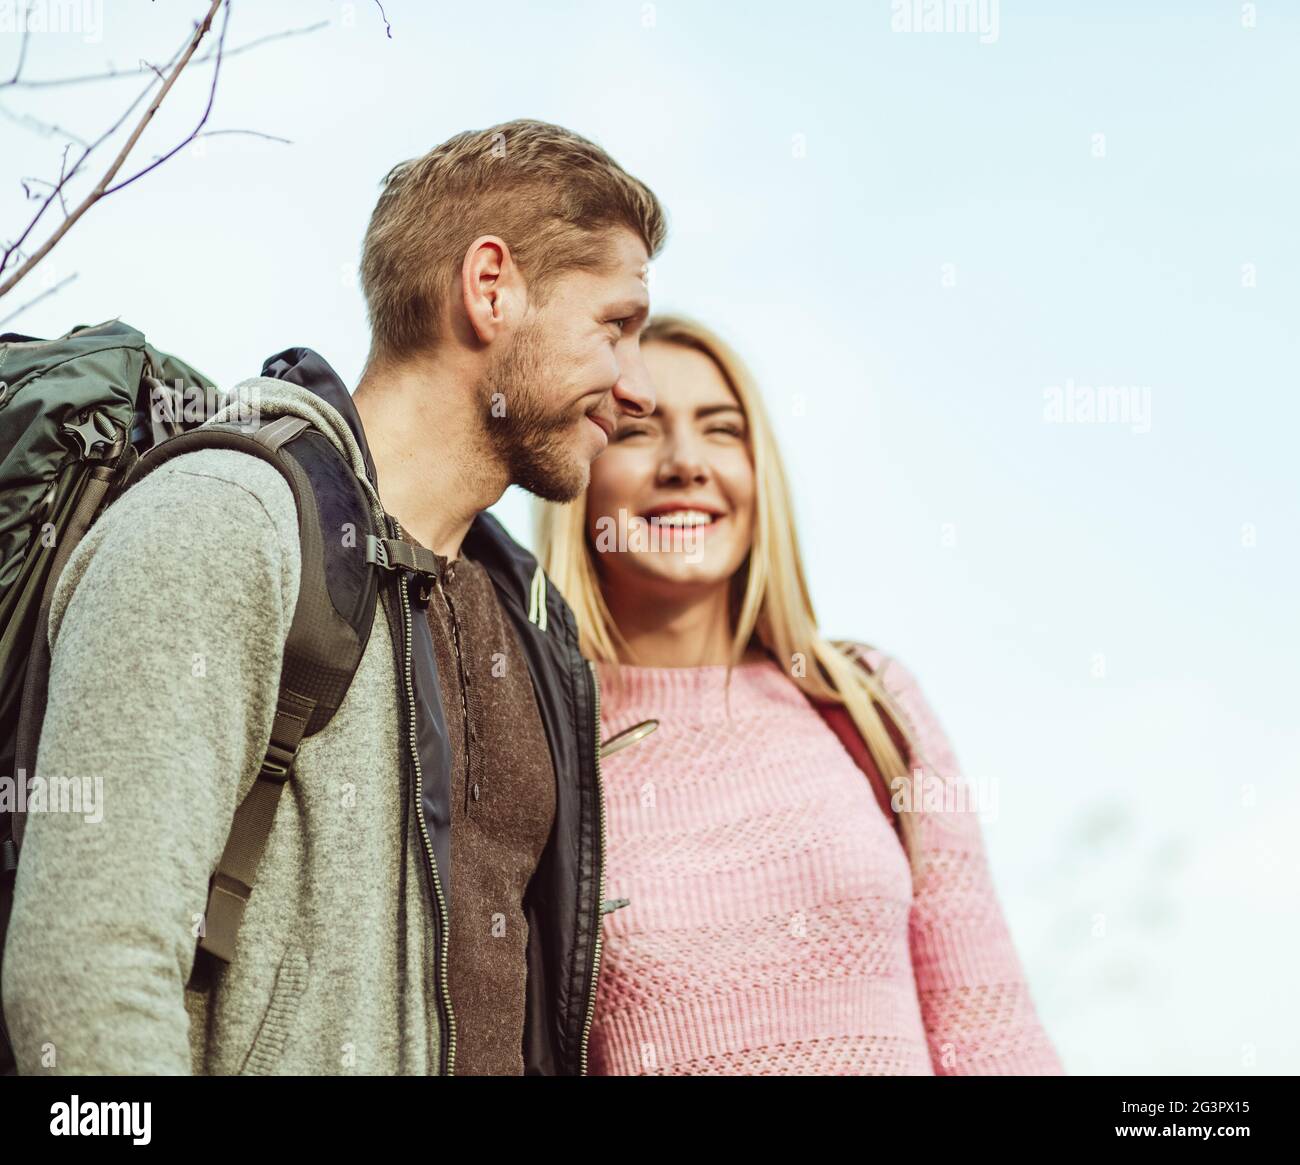 Deux touristes souriant tout en s'embrassant contre un ciel bleu. Accent sélectif sur la vue de profil du jeune homme caucasien WIT Banque D'Images